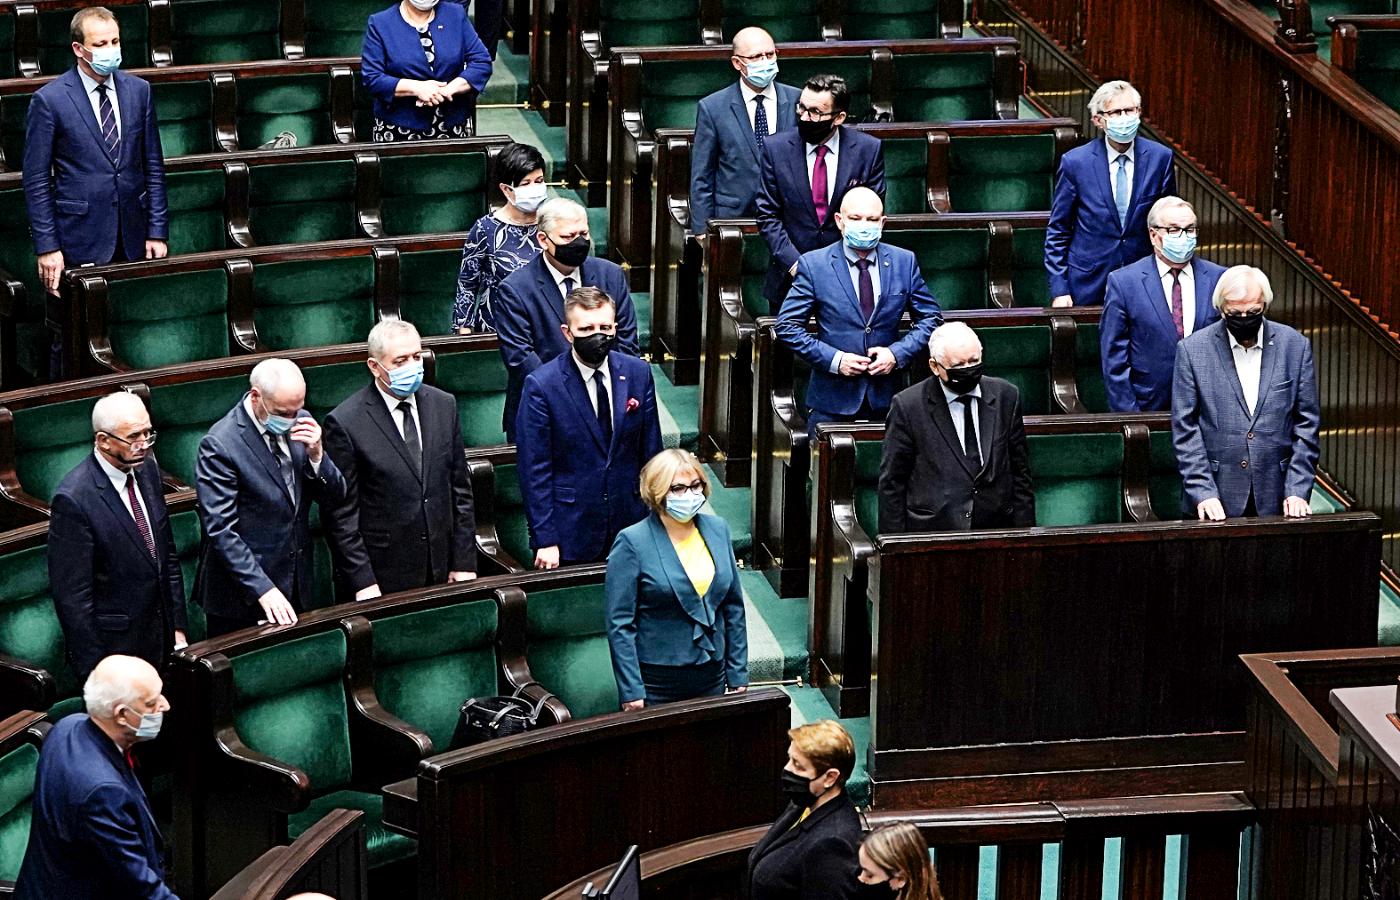 To symetryzm przez lata powodował, że partia Kaczyńskiego była traktowana jak normalne ugrupowanie w demokratycznym porządku i taką się po tych zabiegach w oczach wielu stała.